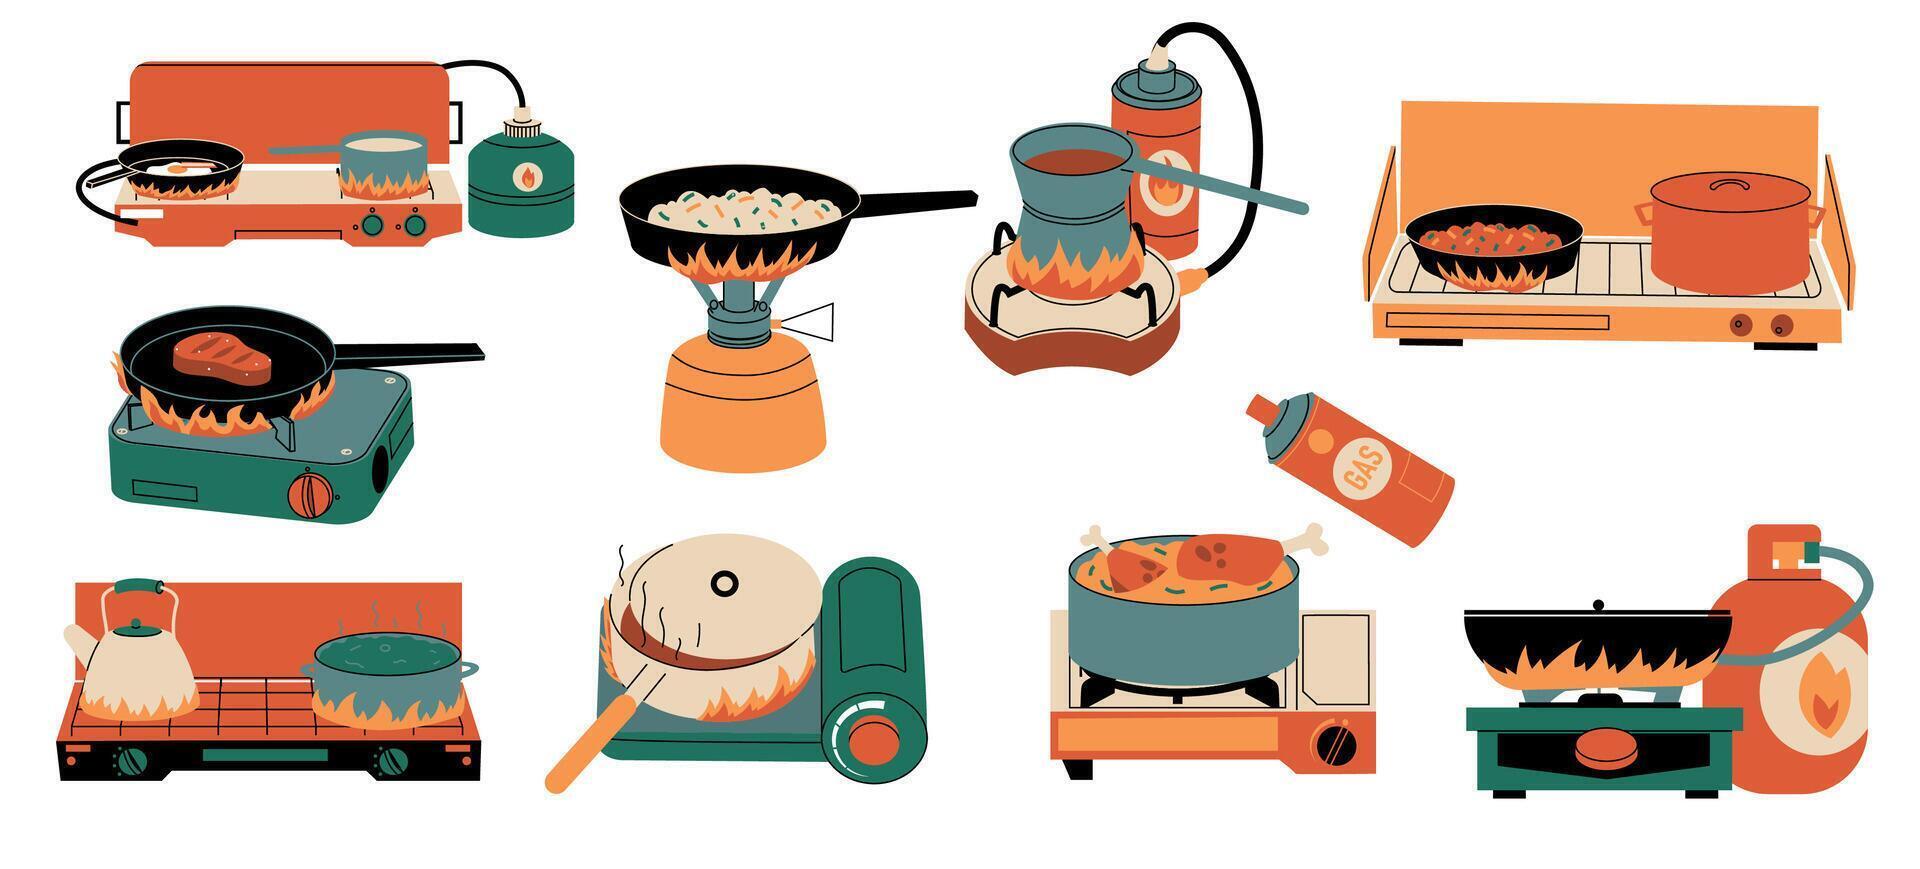 comida en cocina. cocina utensilio para Cocinando soportes en gas fuego calentador, batería de cocina aparato en portátil quemador dibujos animados estilo. vector aislado conjunto